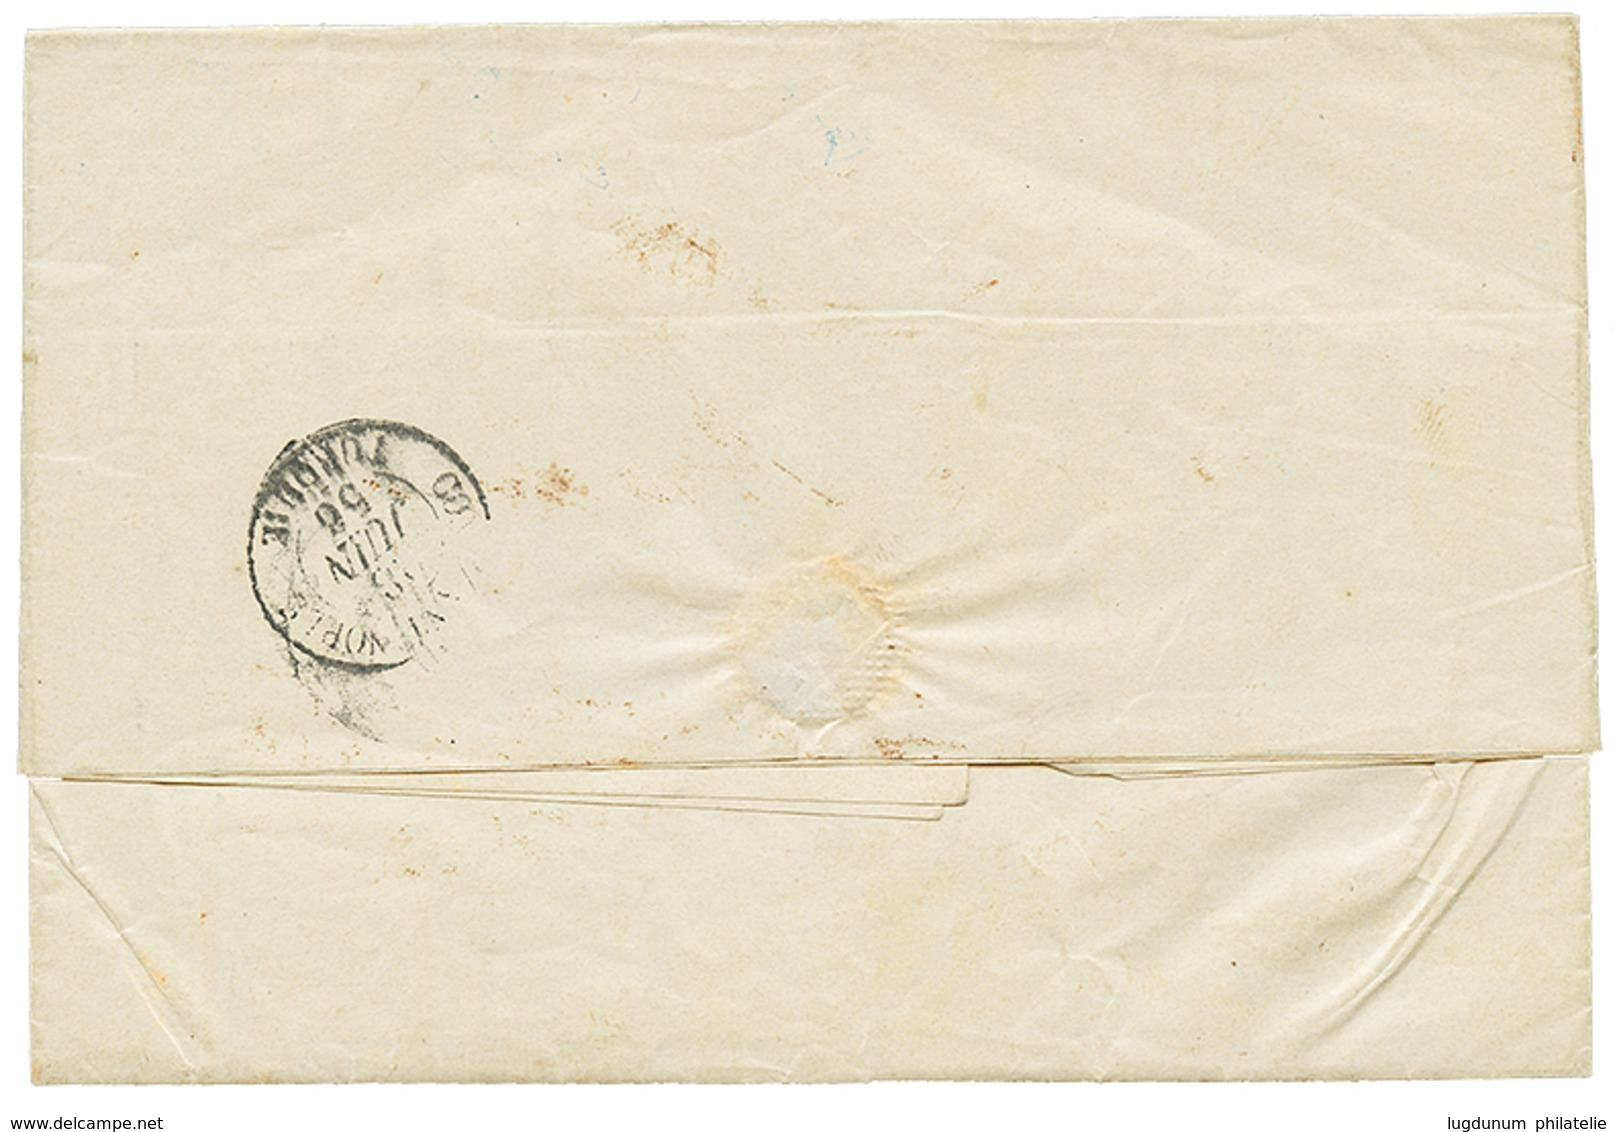 519 1856 CAIRE 190 Juin 56 + Taxe 10 Sur Lettre Avec Texte De MARSEILLE Pour CONSTANTINOPLE. Superbe. - Poste Maritime